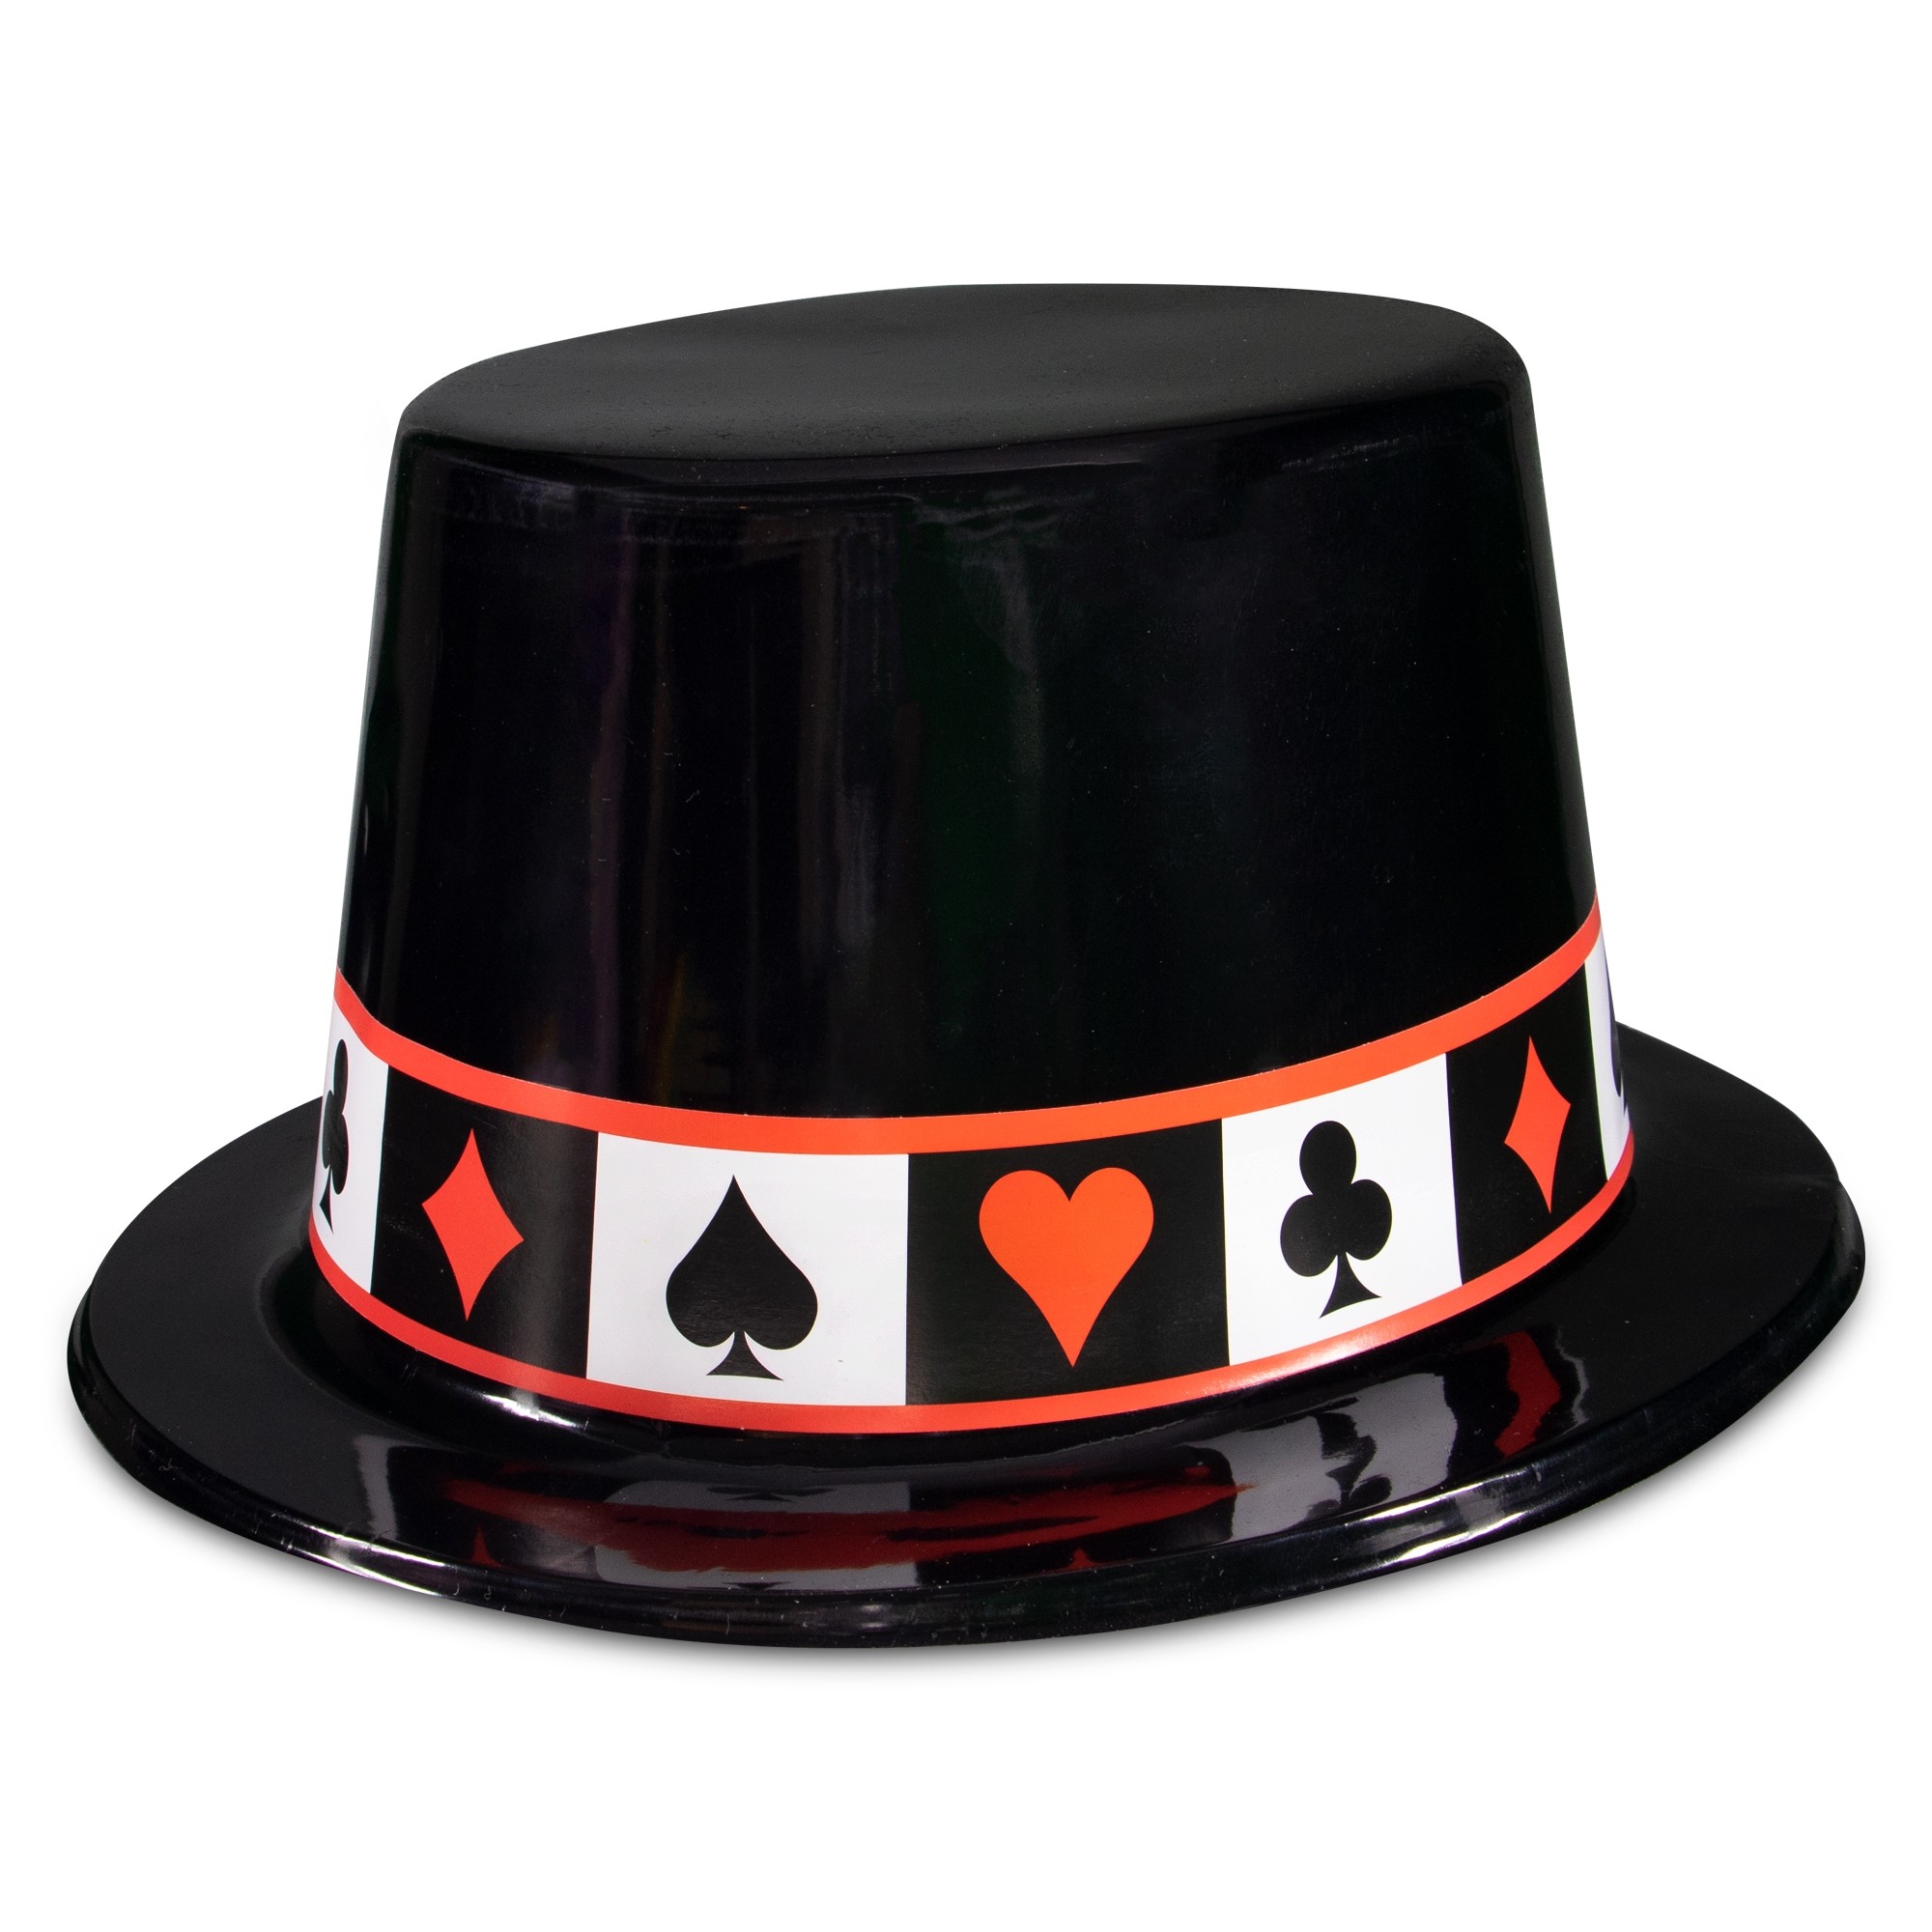 Casino Theme Plastic Hat